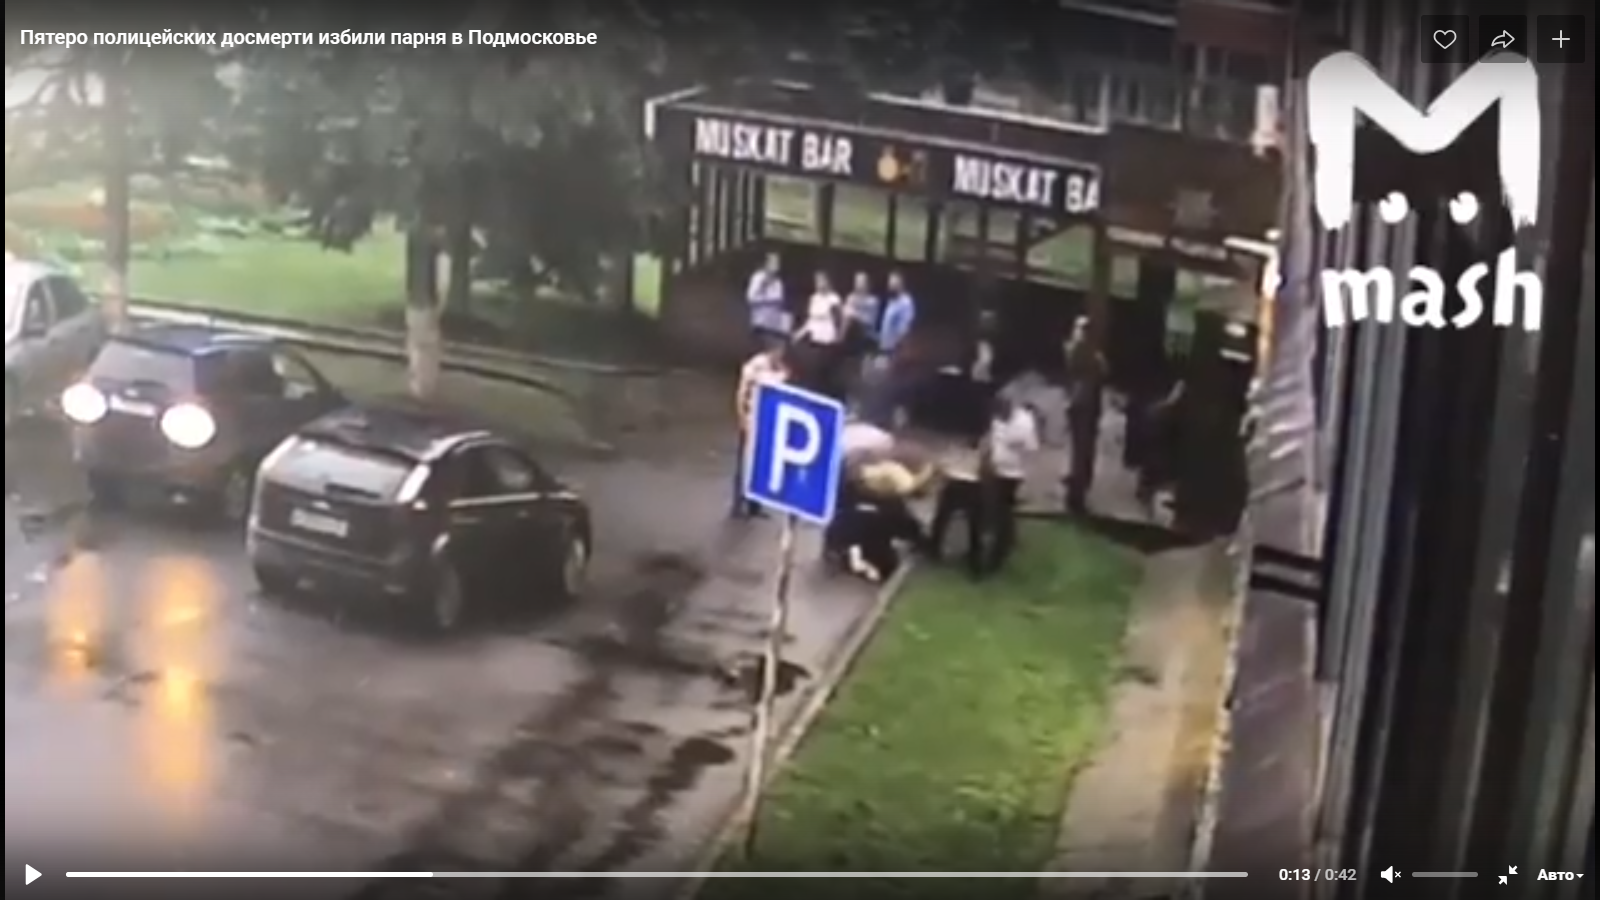 Видео дня: пятеро гаишников до смерти избили жителя Подмосковья